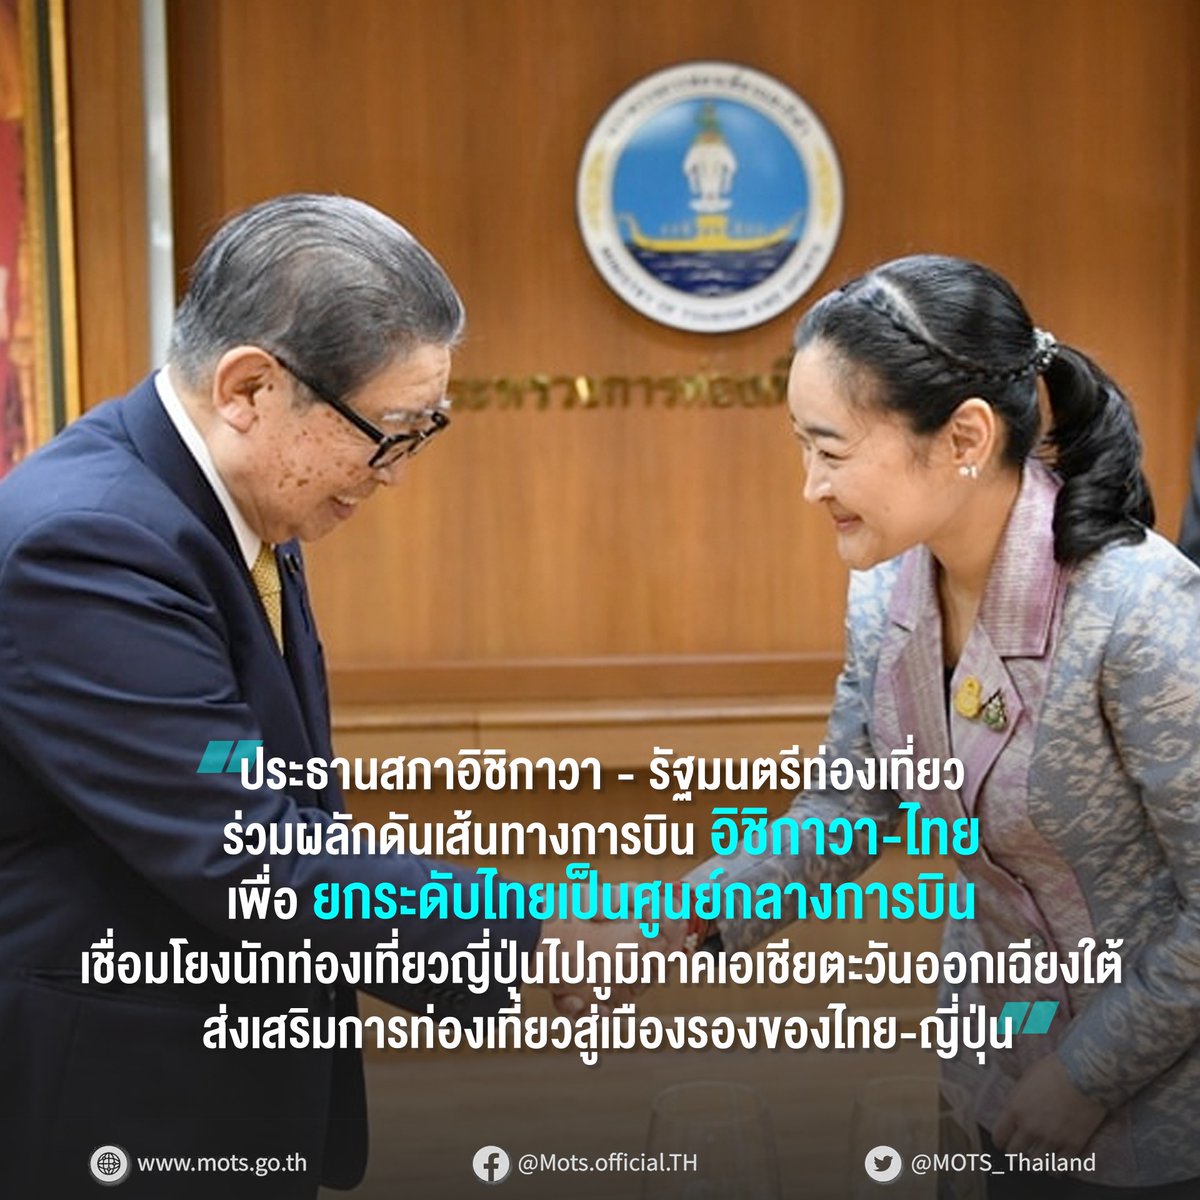 ประธานสภาอิชิกาวา-รัฐมนตรีท่องเที่ยว ร่วมผลักดันเส้นทางการบิน เพื่อยกระดับไทยเป็นศูนย์กลางการบิน พร้อมส่งเสริมการท่องเที่ยวสู่เมืองรอง ของไทย-ญี่ปุ่น